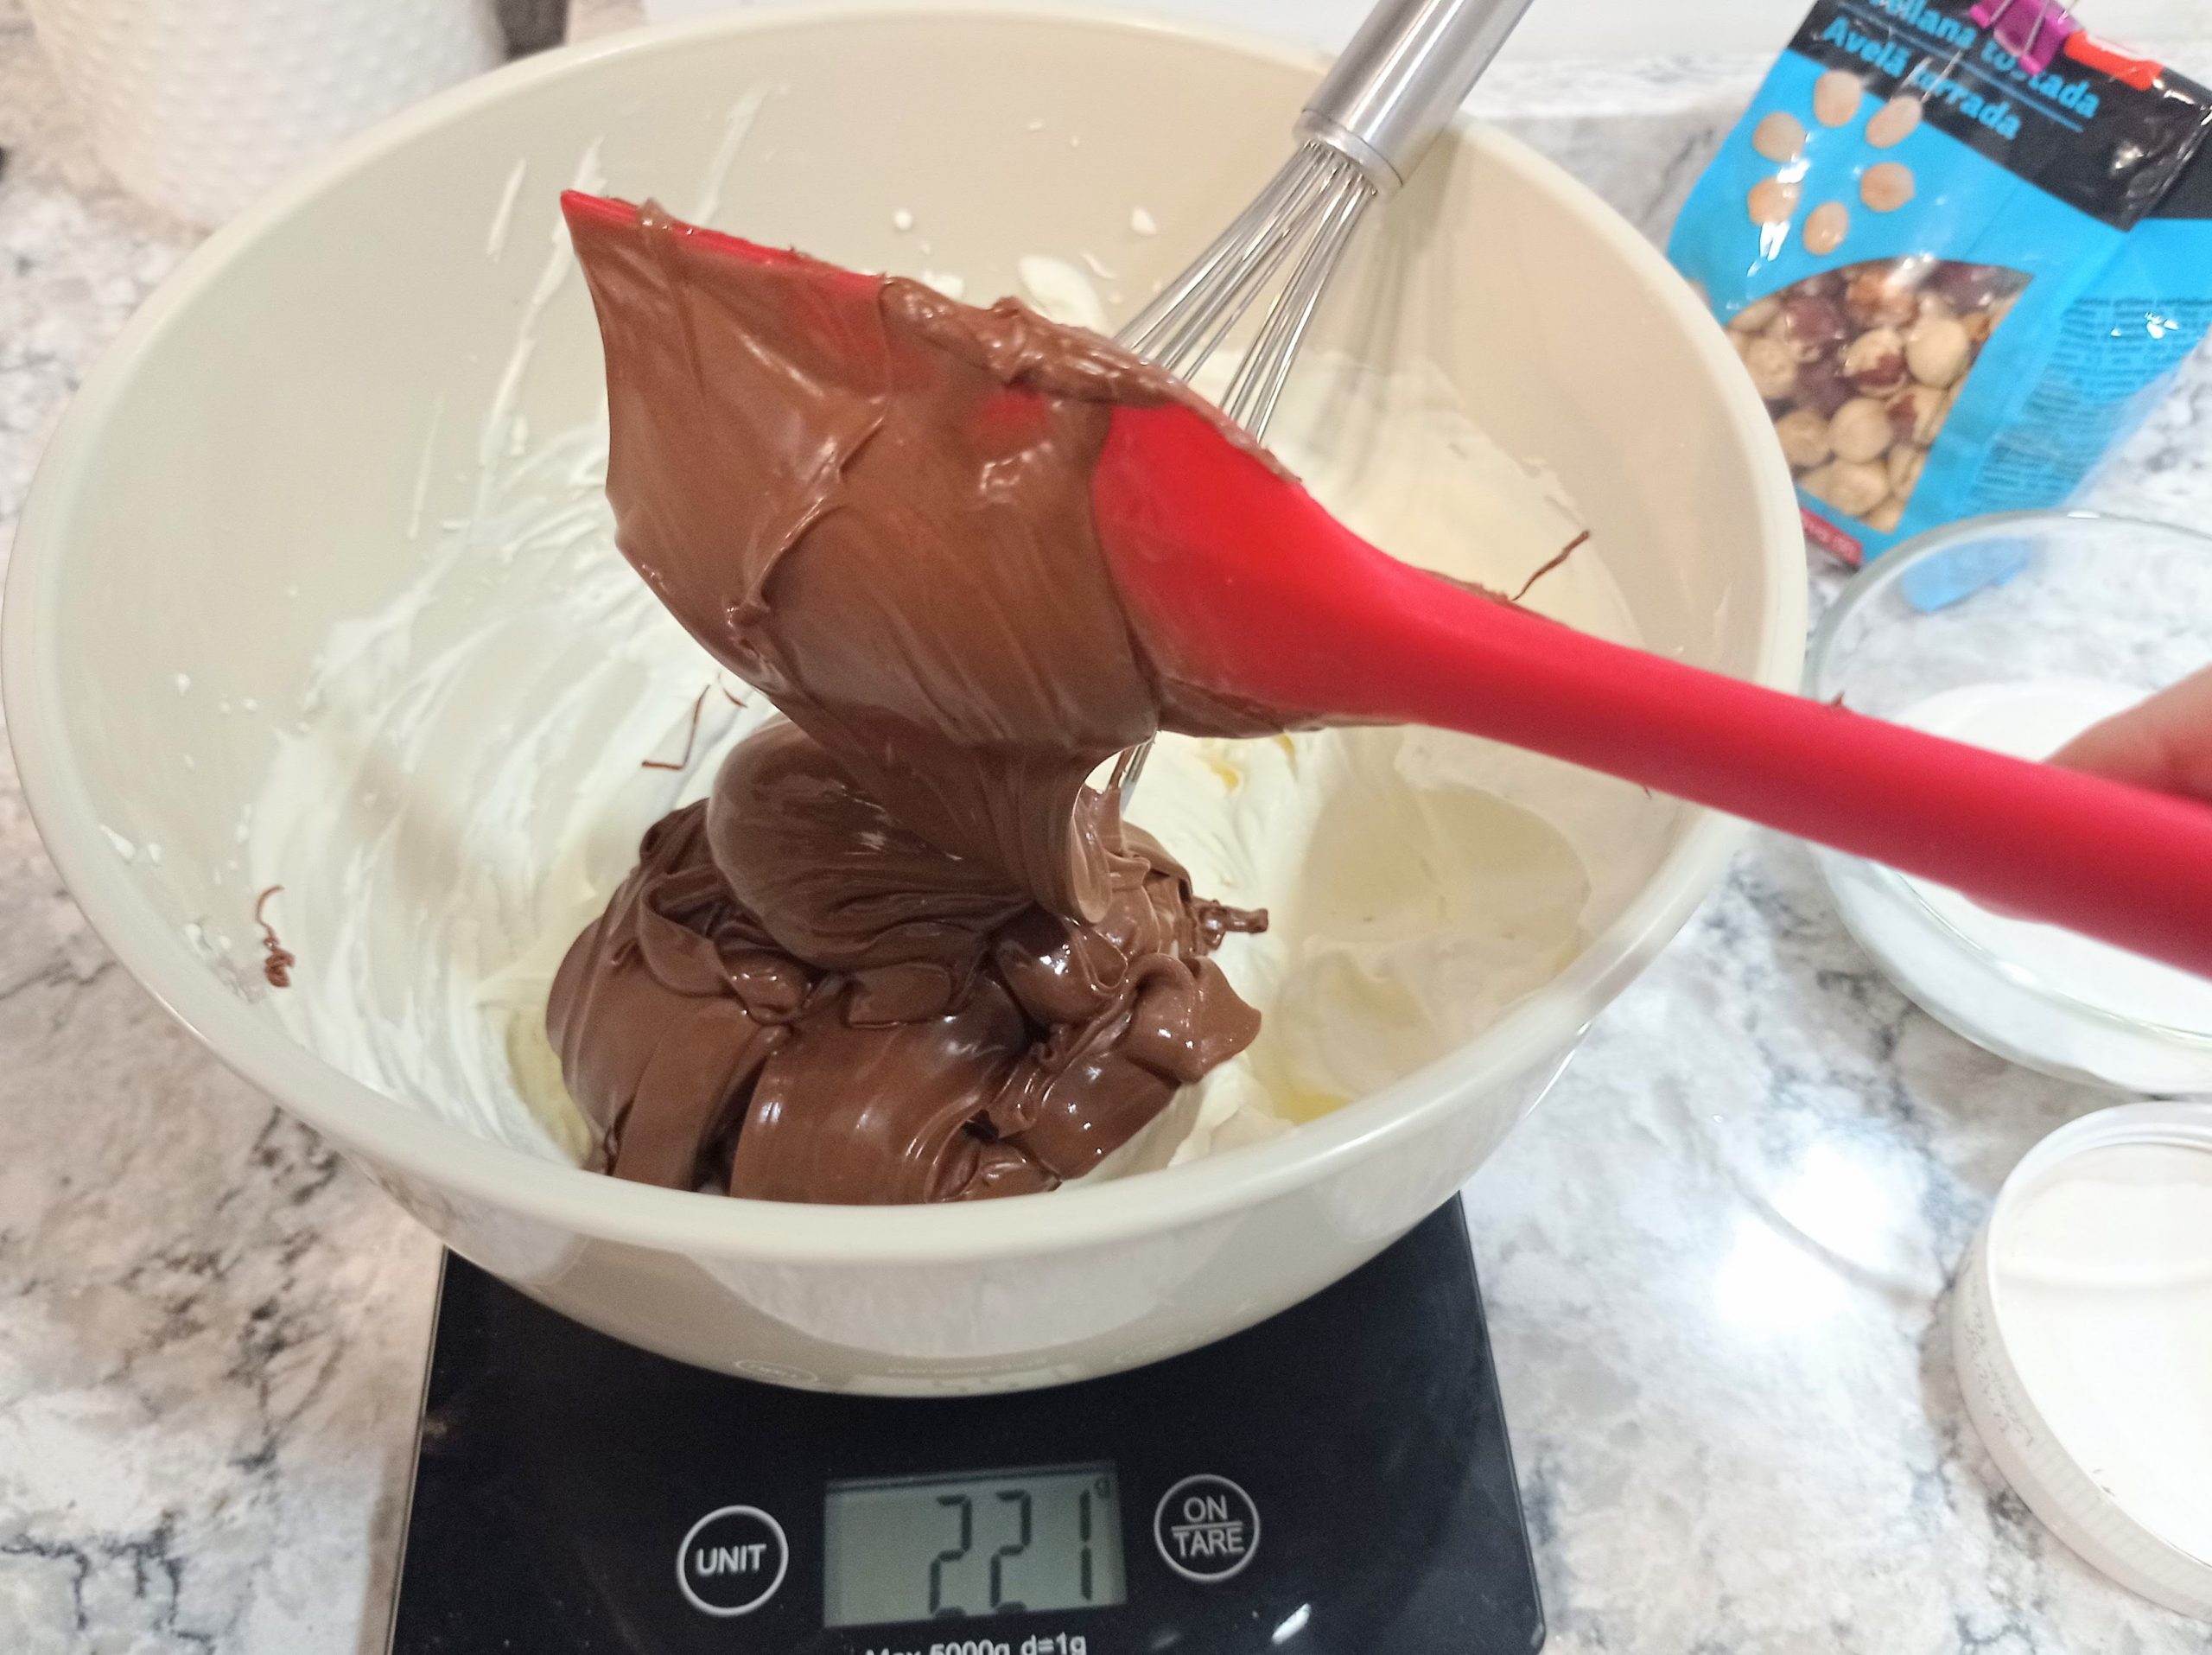 Proporcionando la cantidad de Nutella para mezclar con la nata montada